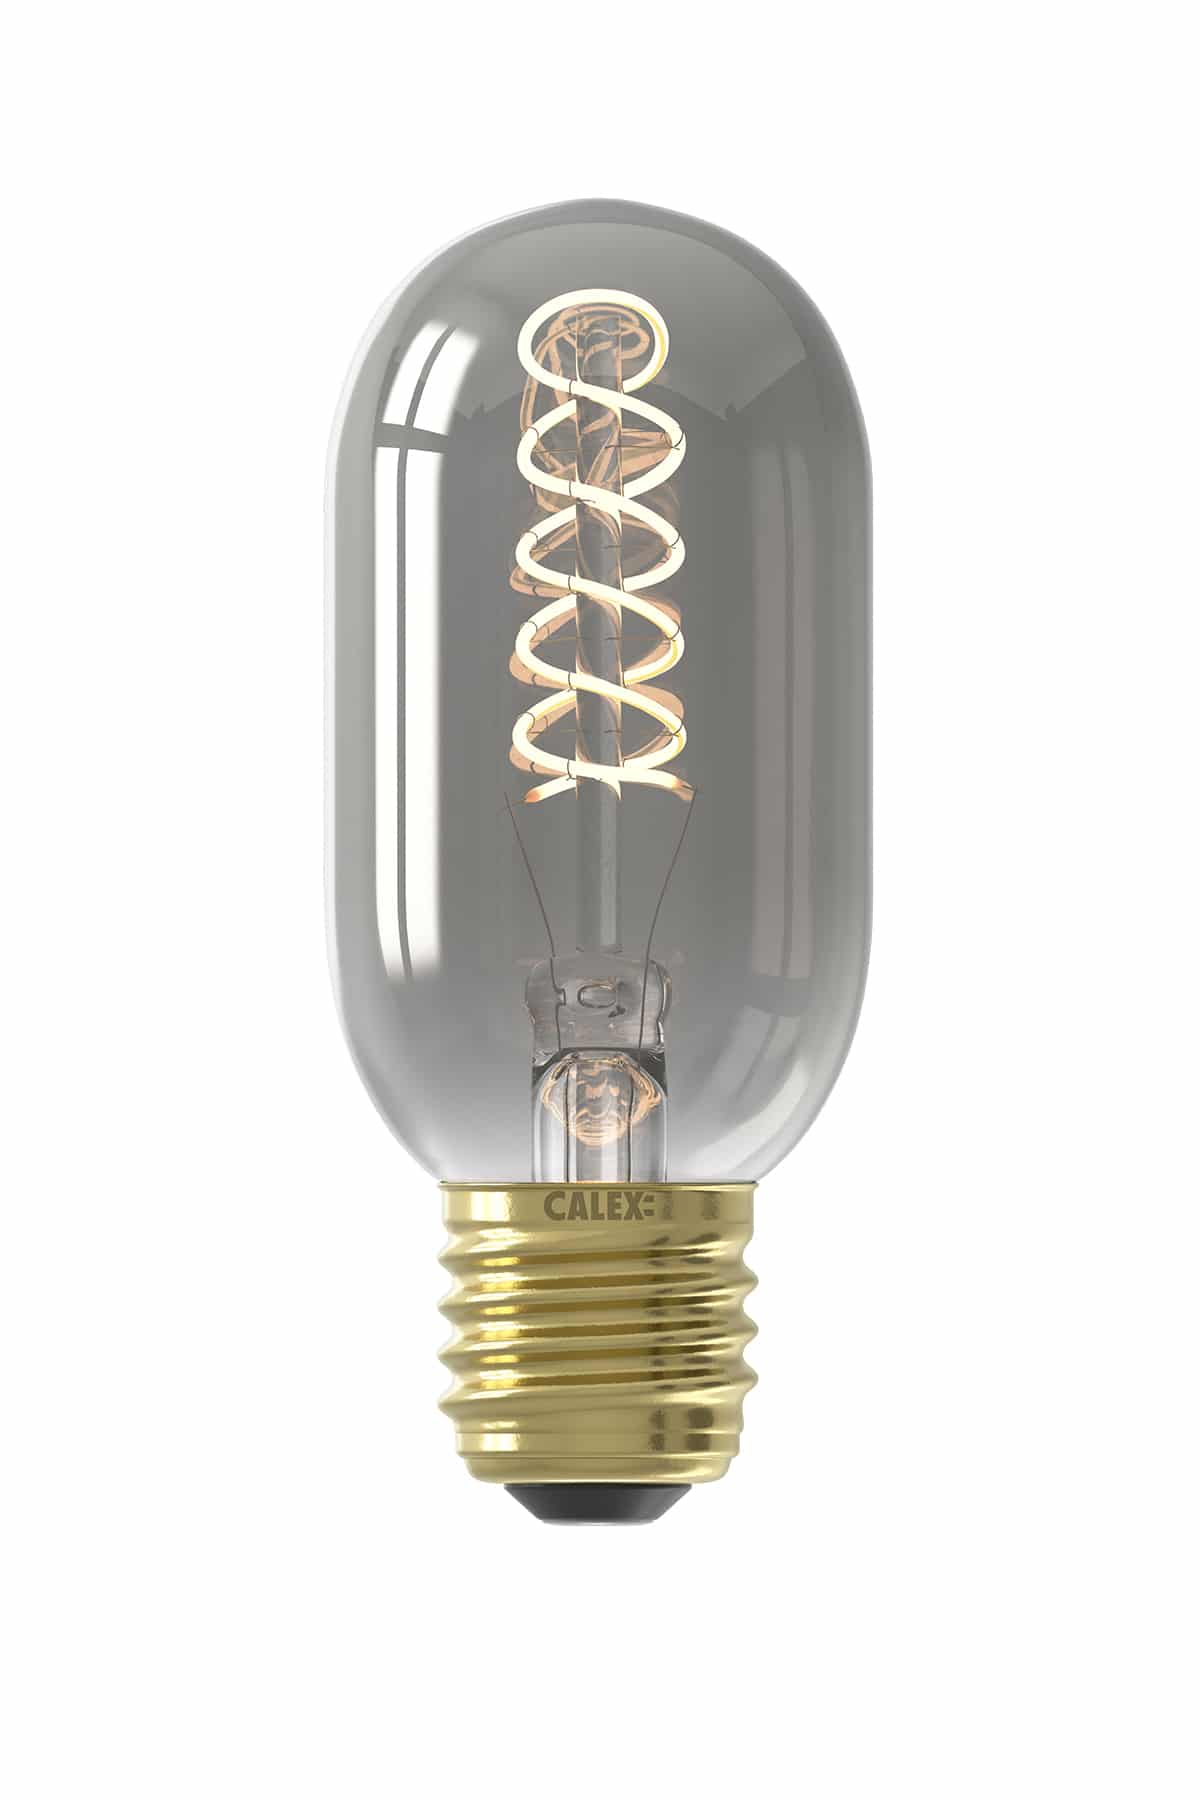 Calex Titanium Tubular Led Lamp E27 8211 100 Lumen